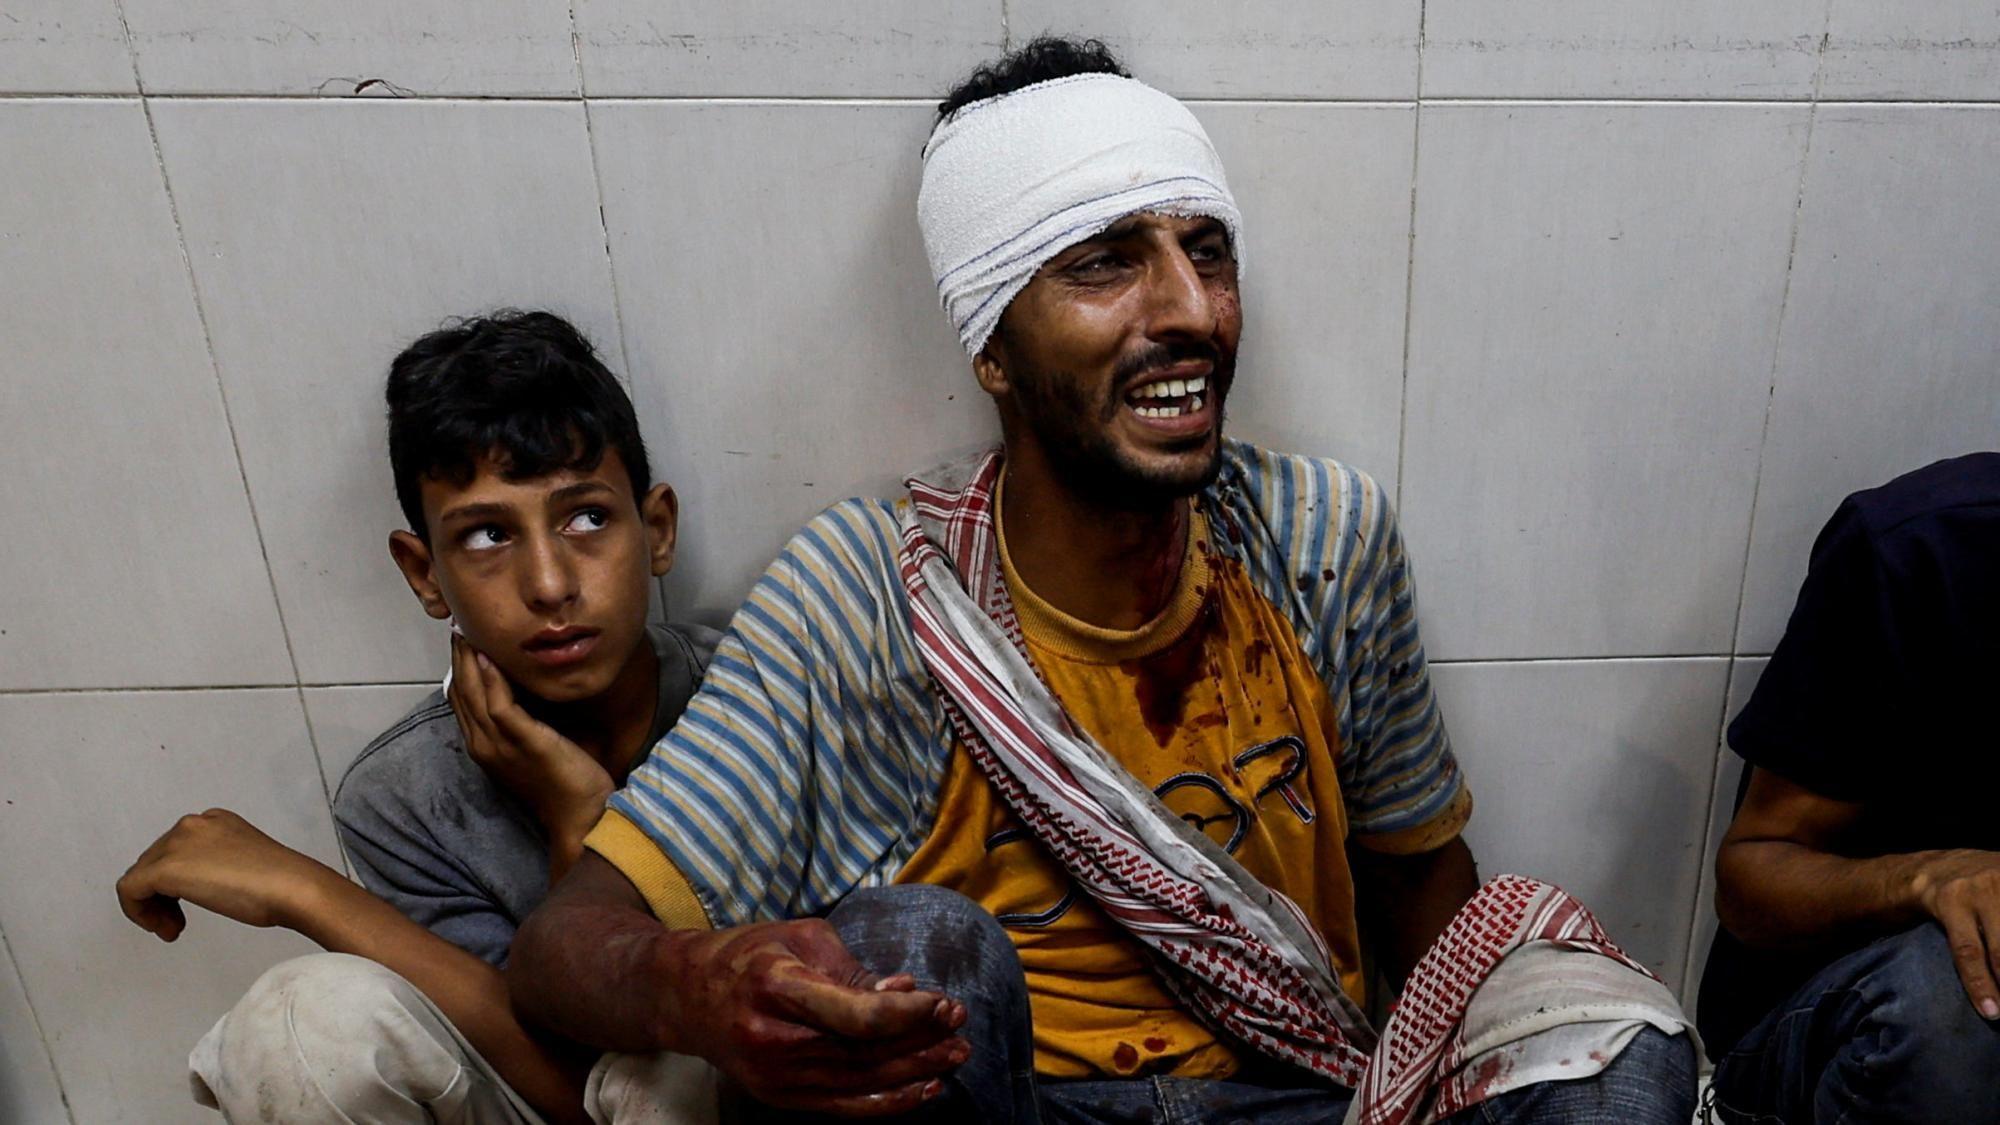 Israeli strike on Gaza camp kills 29, hospital says